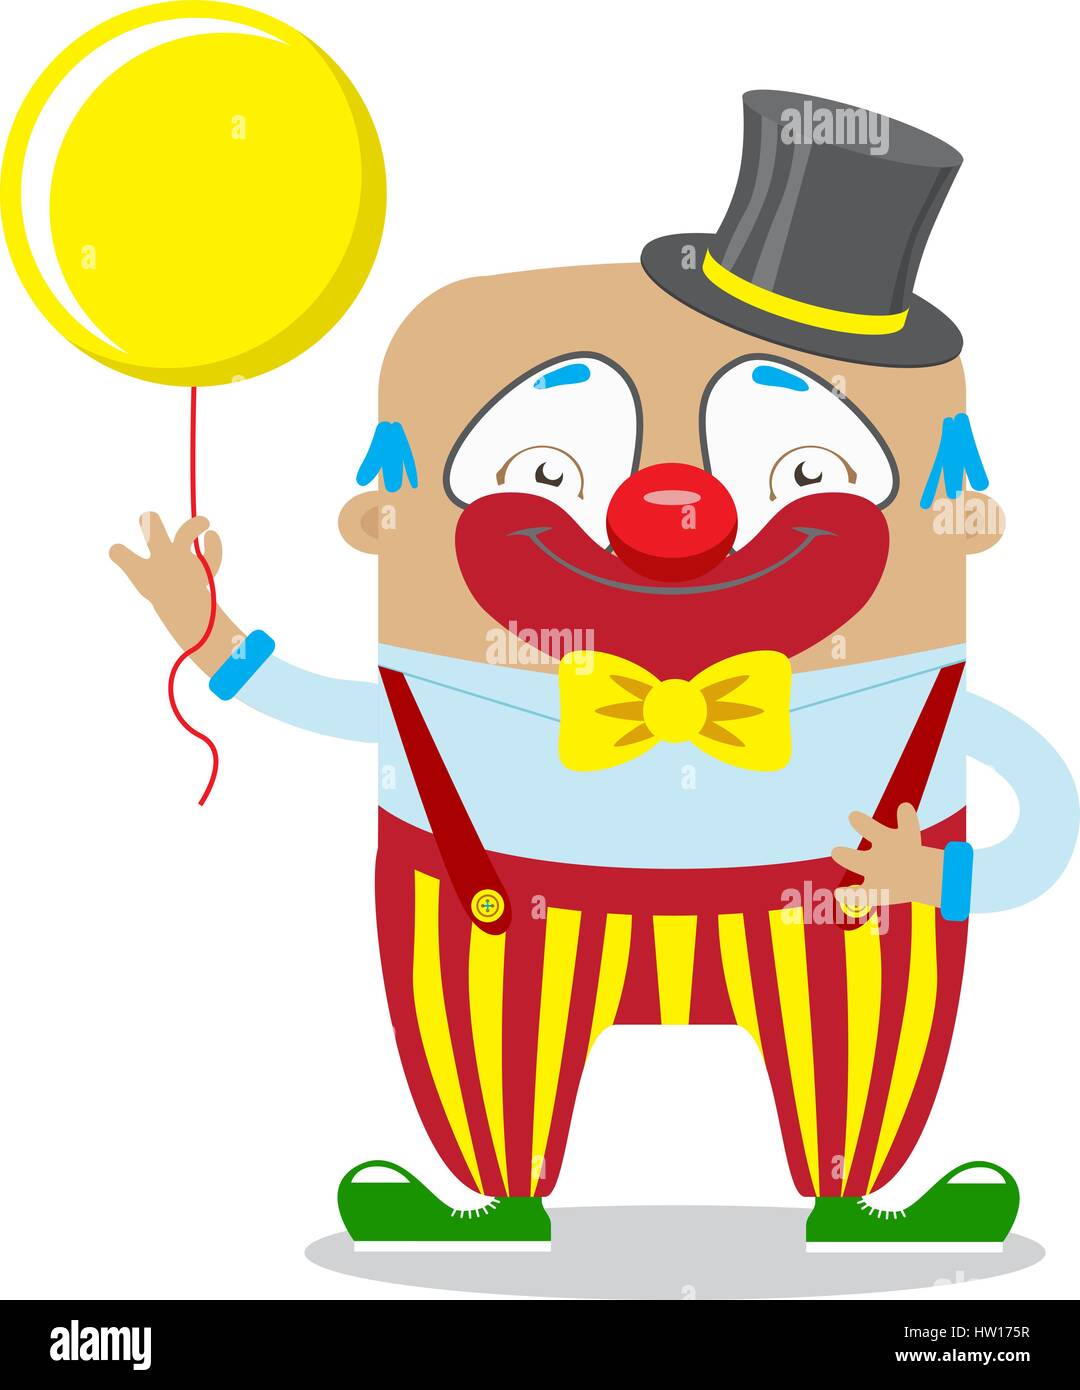 Zirkus Clown im klassischen Outfit mit roter Nase und Make up hält Ballon im Circus Show Künstler. Zirkus-Konzept. Flache Cartoon-Vektor-illustration Stock Vektor